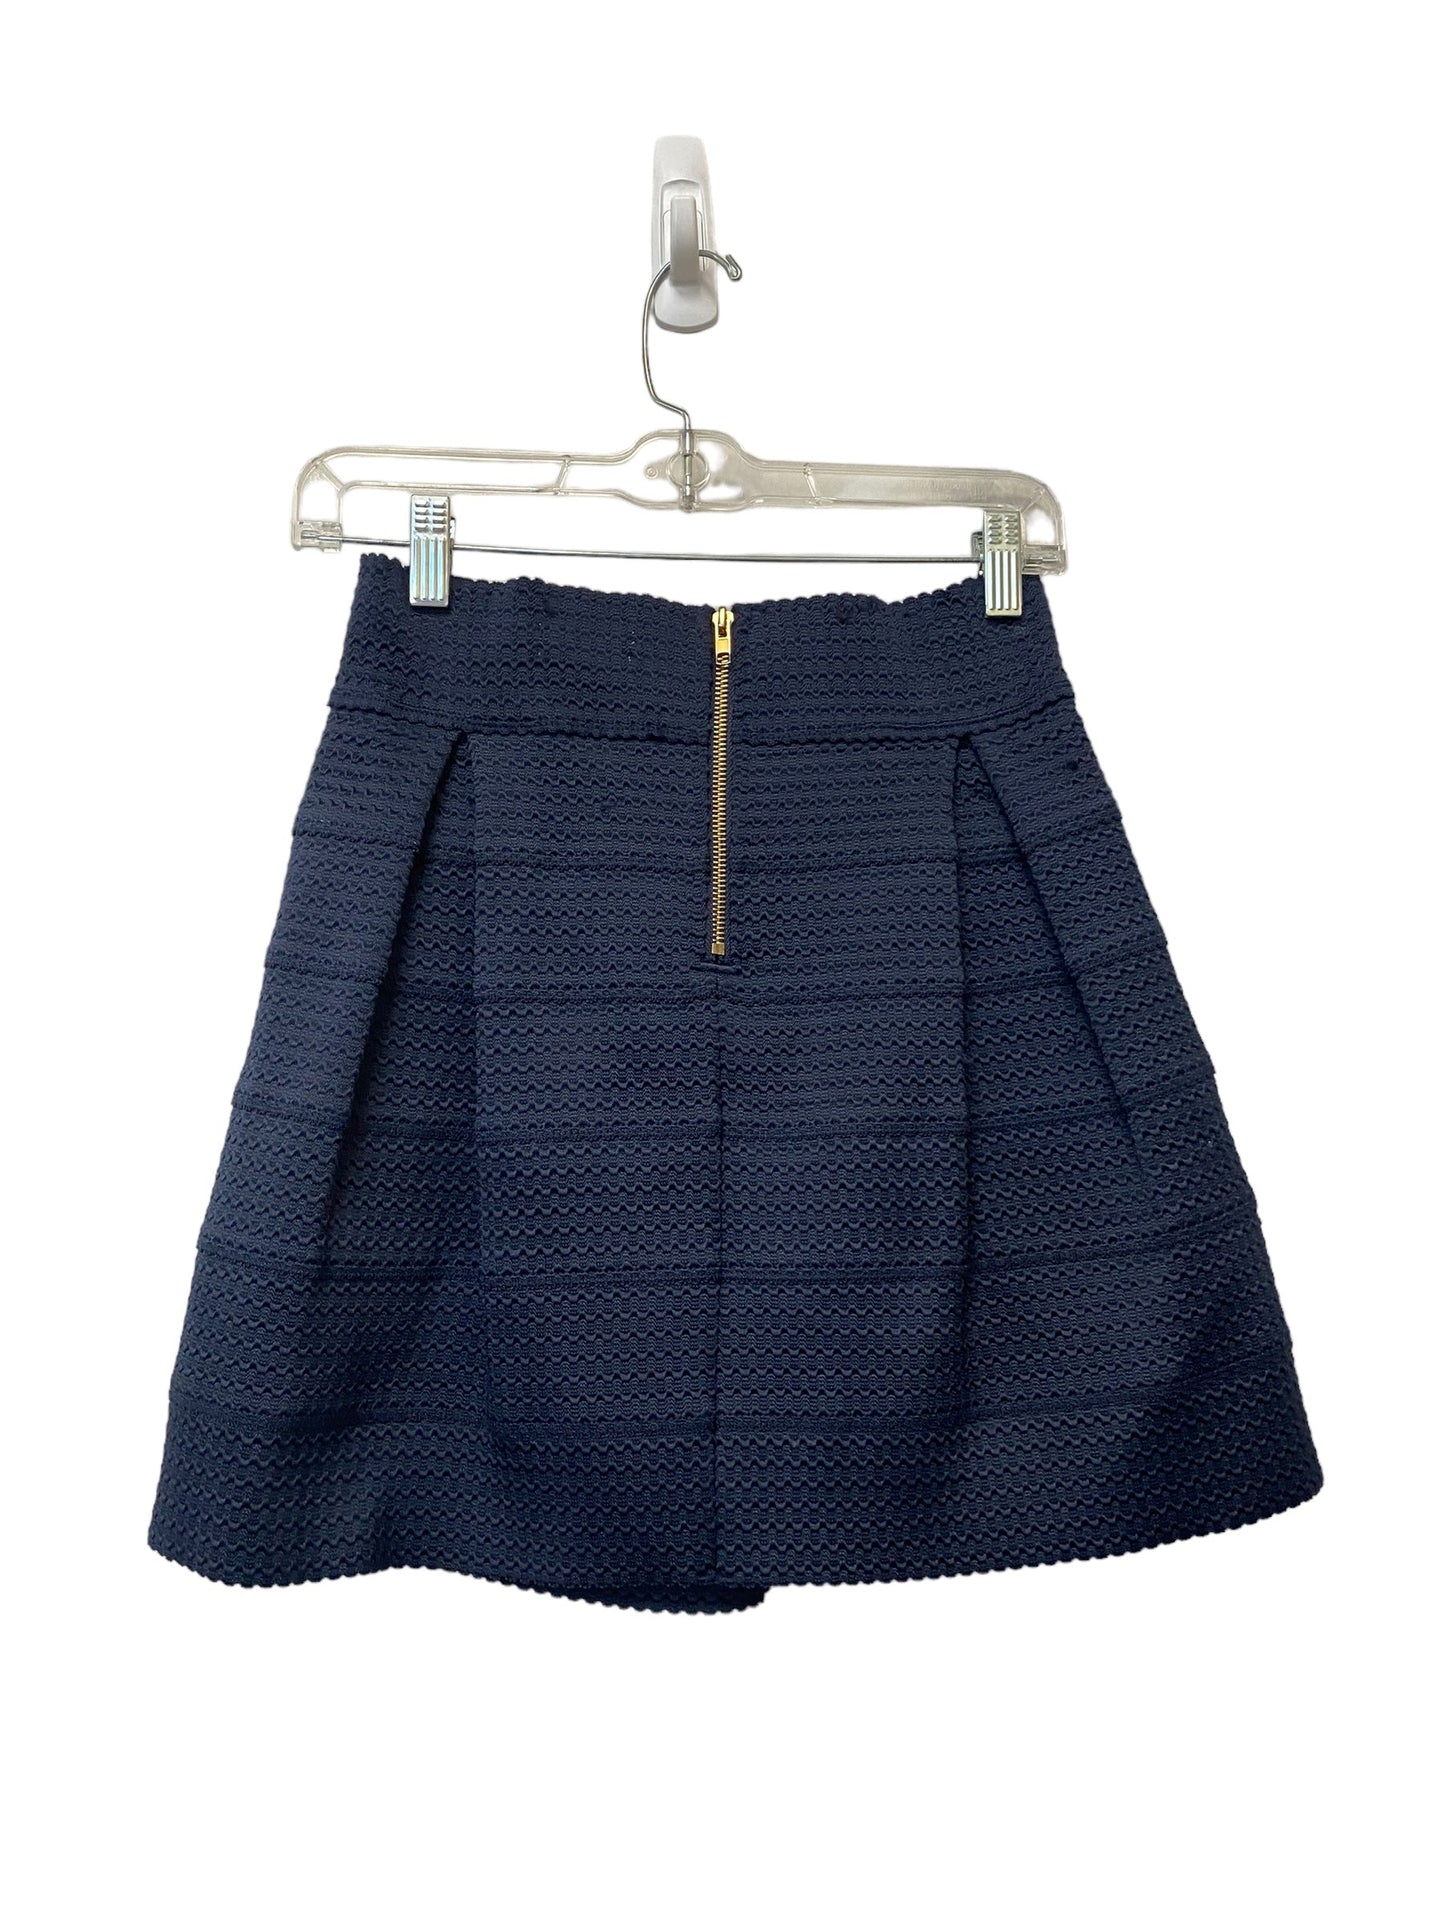 Skirt Mini & Short By Ginger G  Size: M